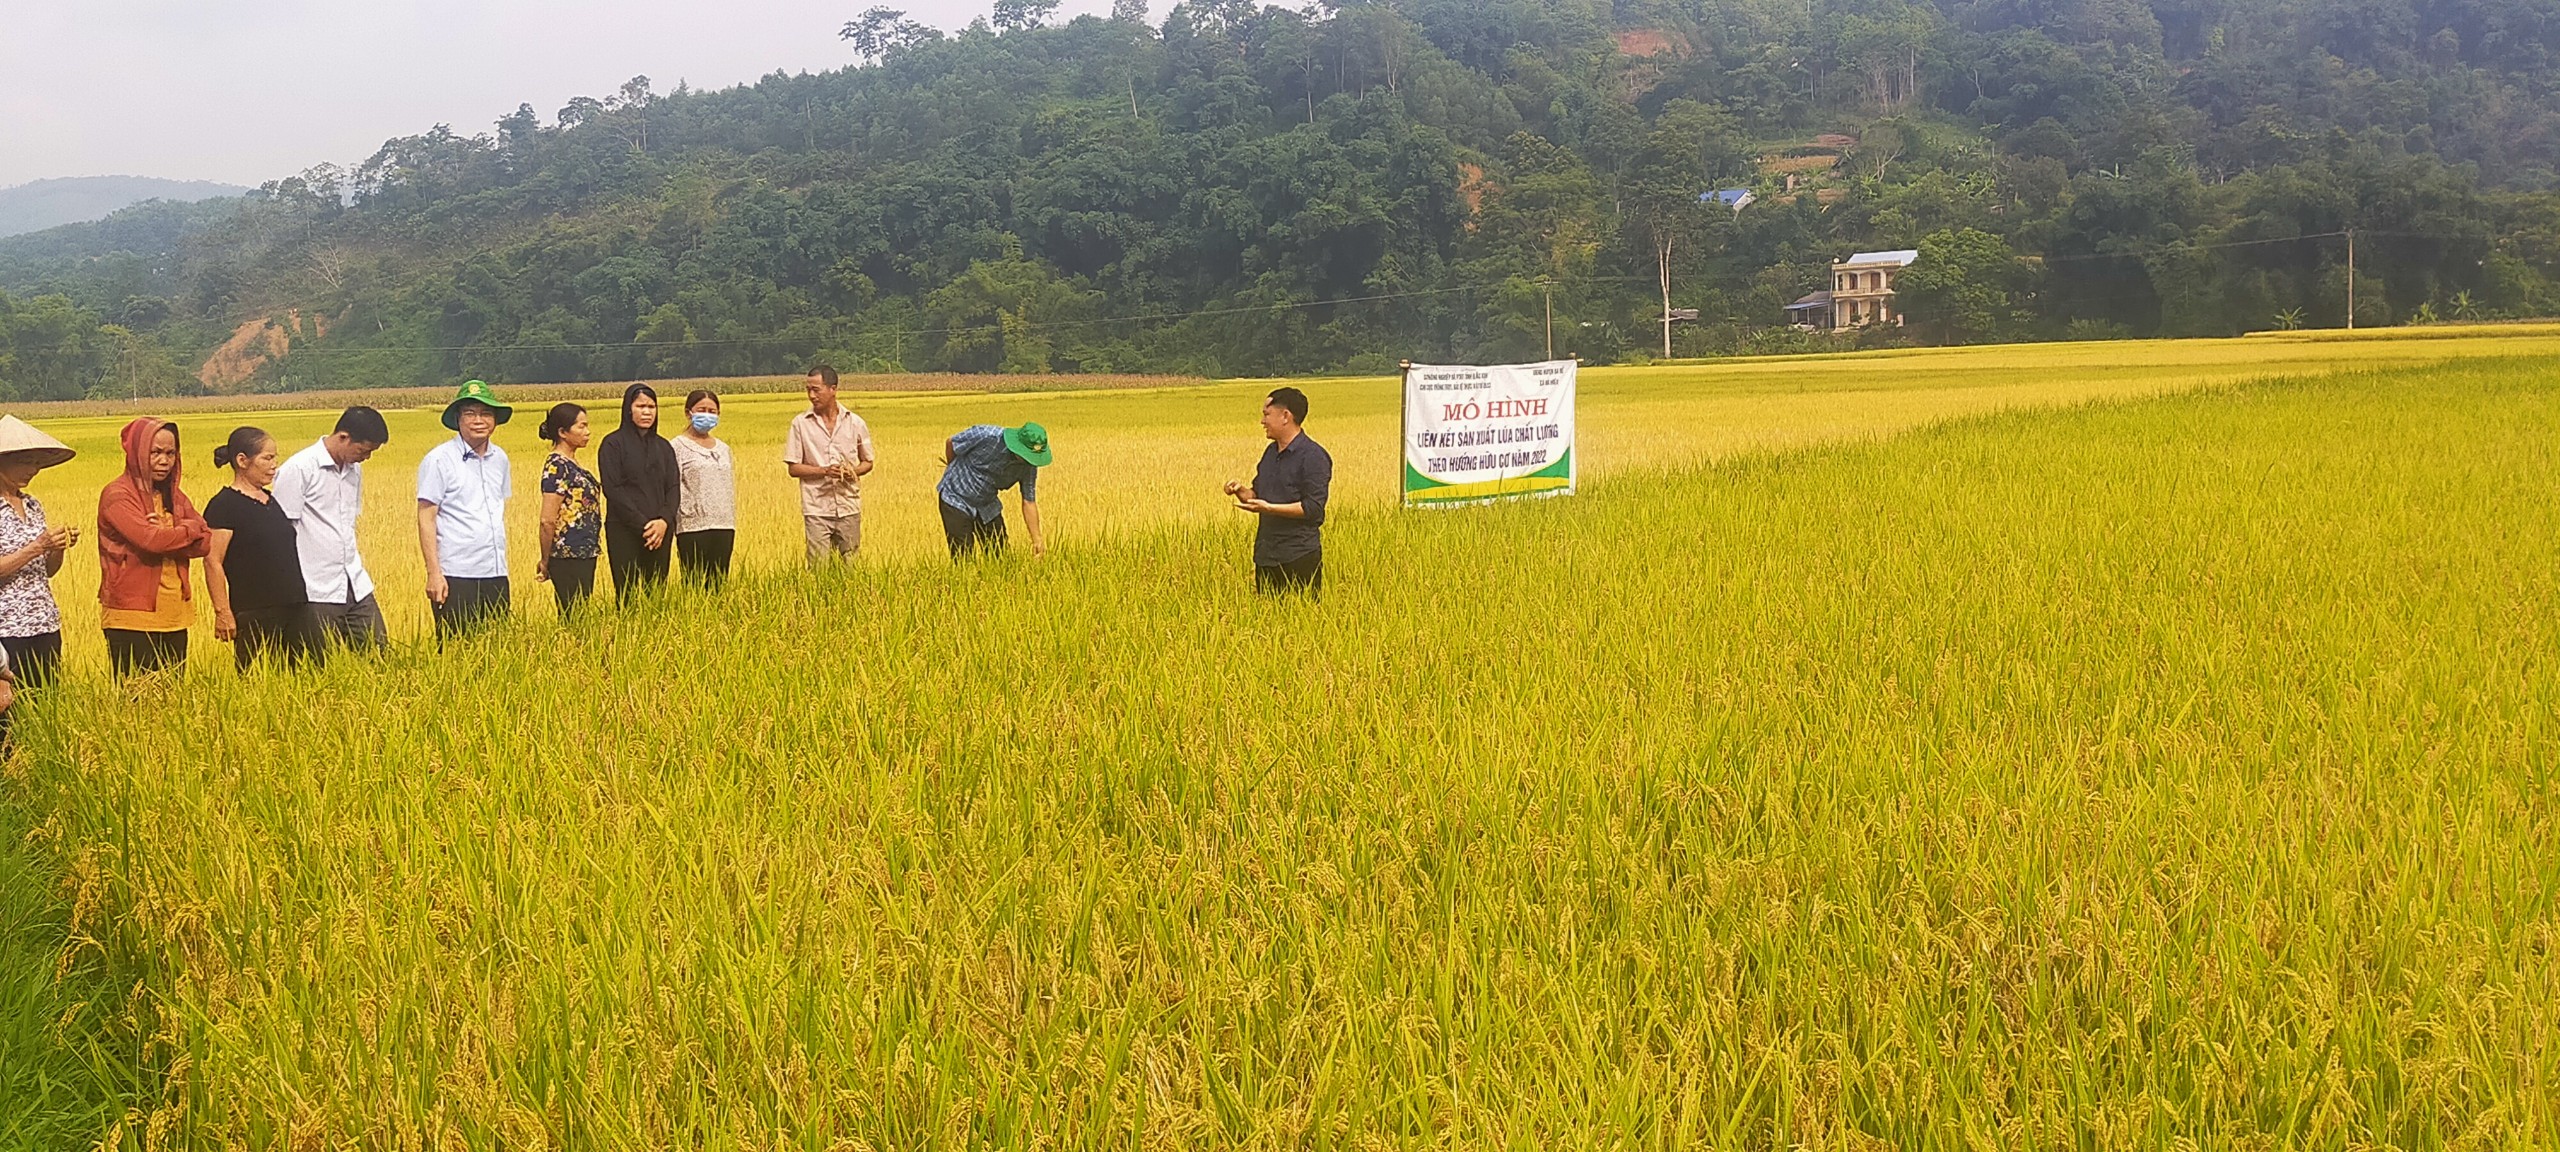 Sản xuất lúa hữu cơ  Hướng đi bền vững  baotintucvn